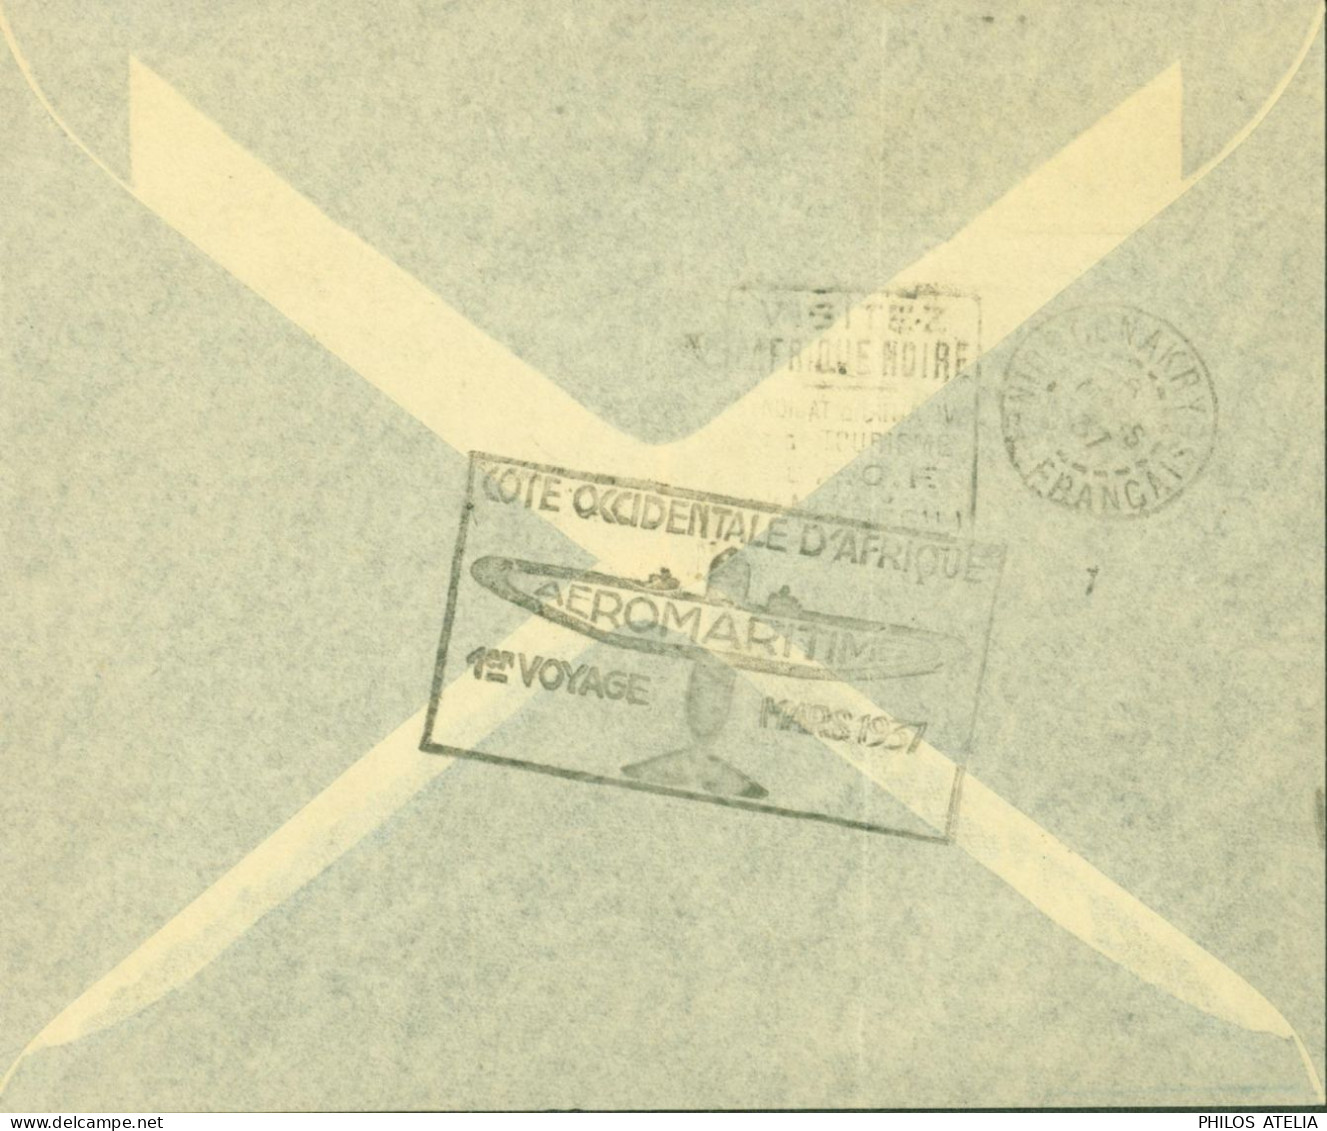 Dahomey YT N°99 101 72 Par Avion Cachet Cote Occidentale D'Afrique Aéromaritime 1er Voyage Mars 1937 CAD Cotonou 4 3 37 - Storia Postale